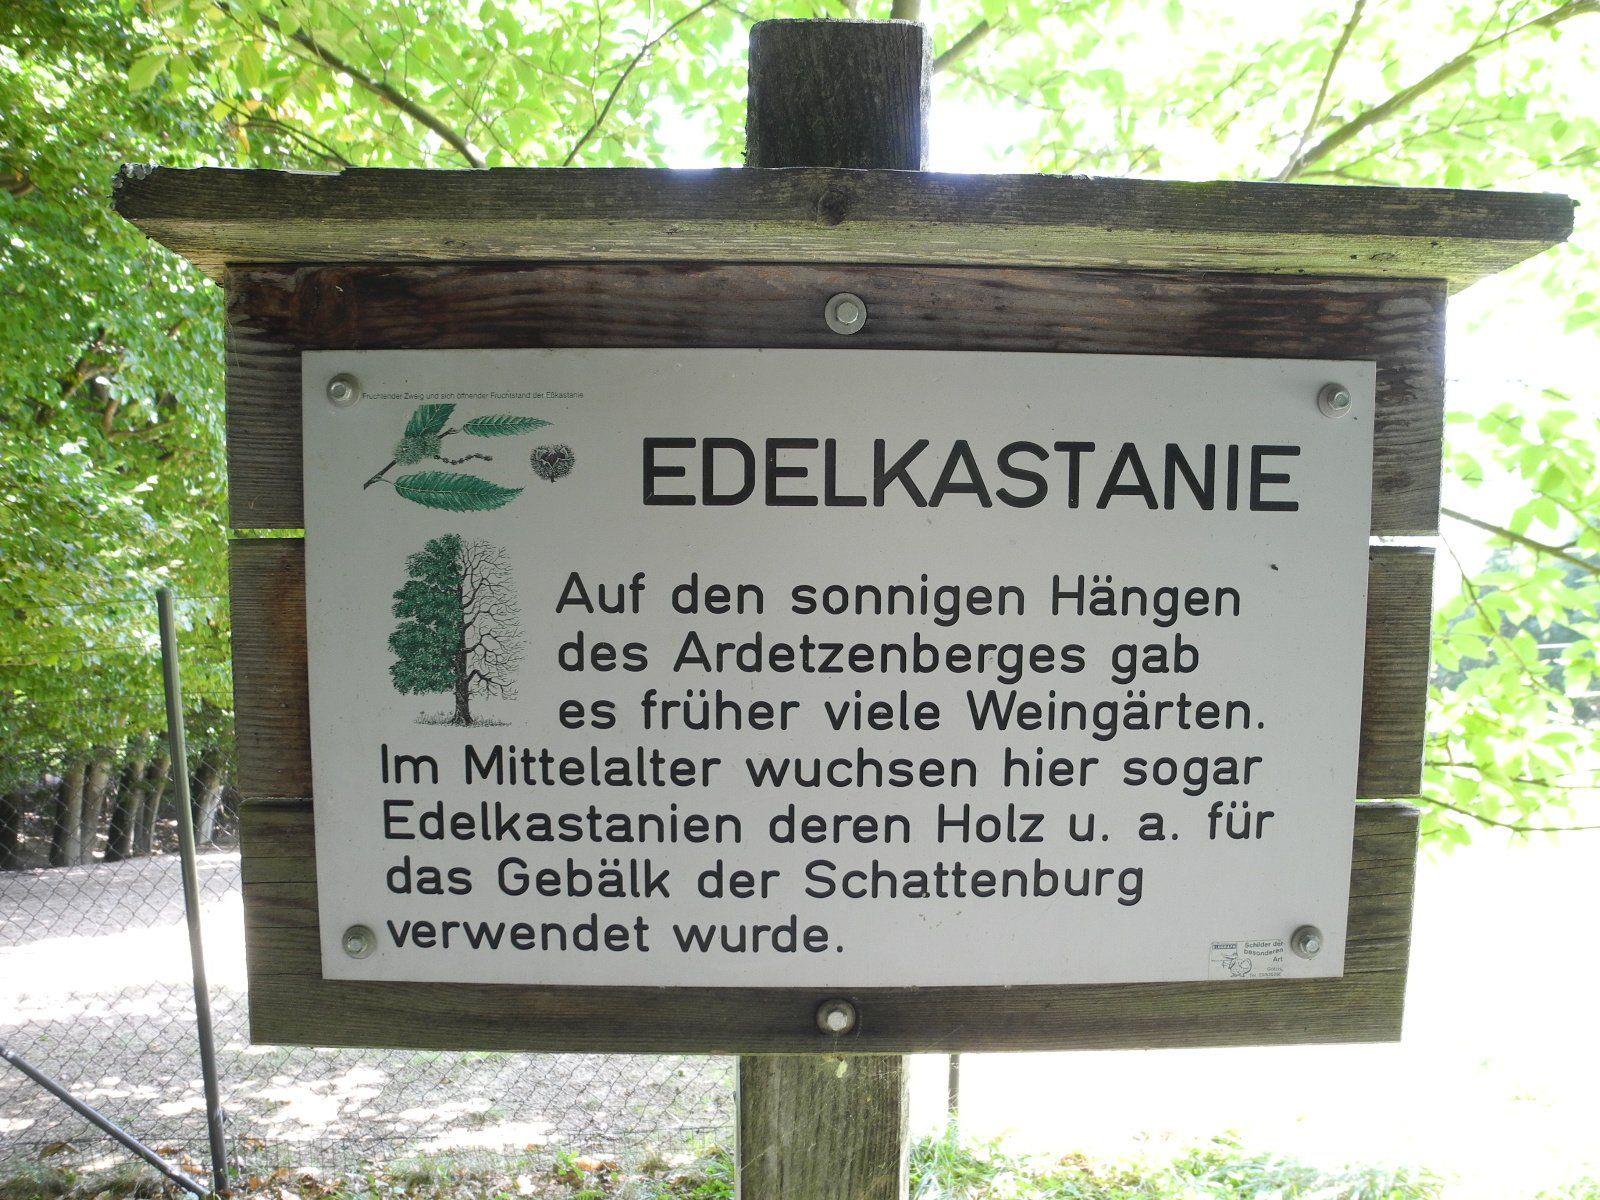 Die Info-Tafel des Waldlehrpfdes auf dem Ardetzenberg (Wildpark) informiert über die Edelkastanie